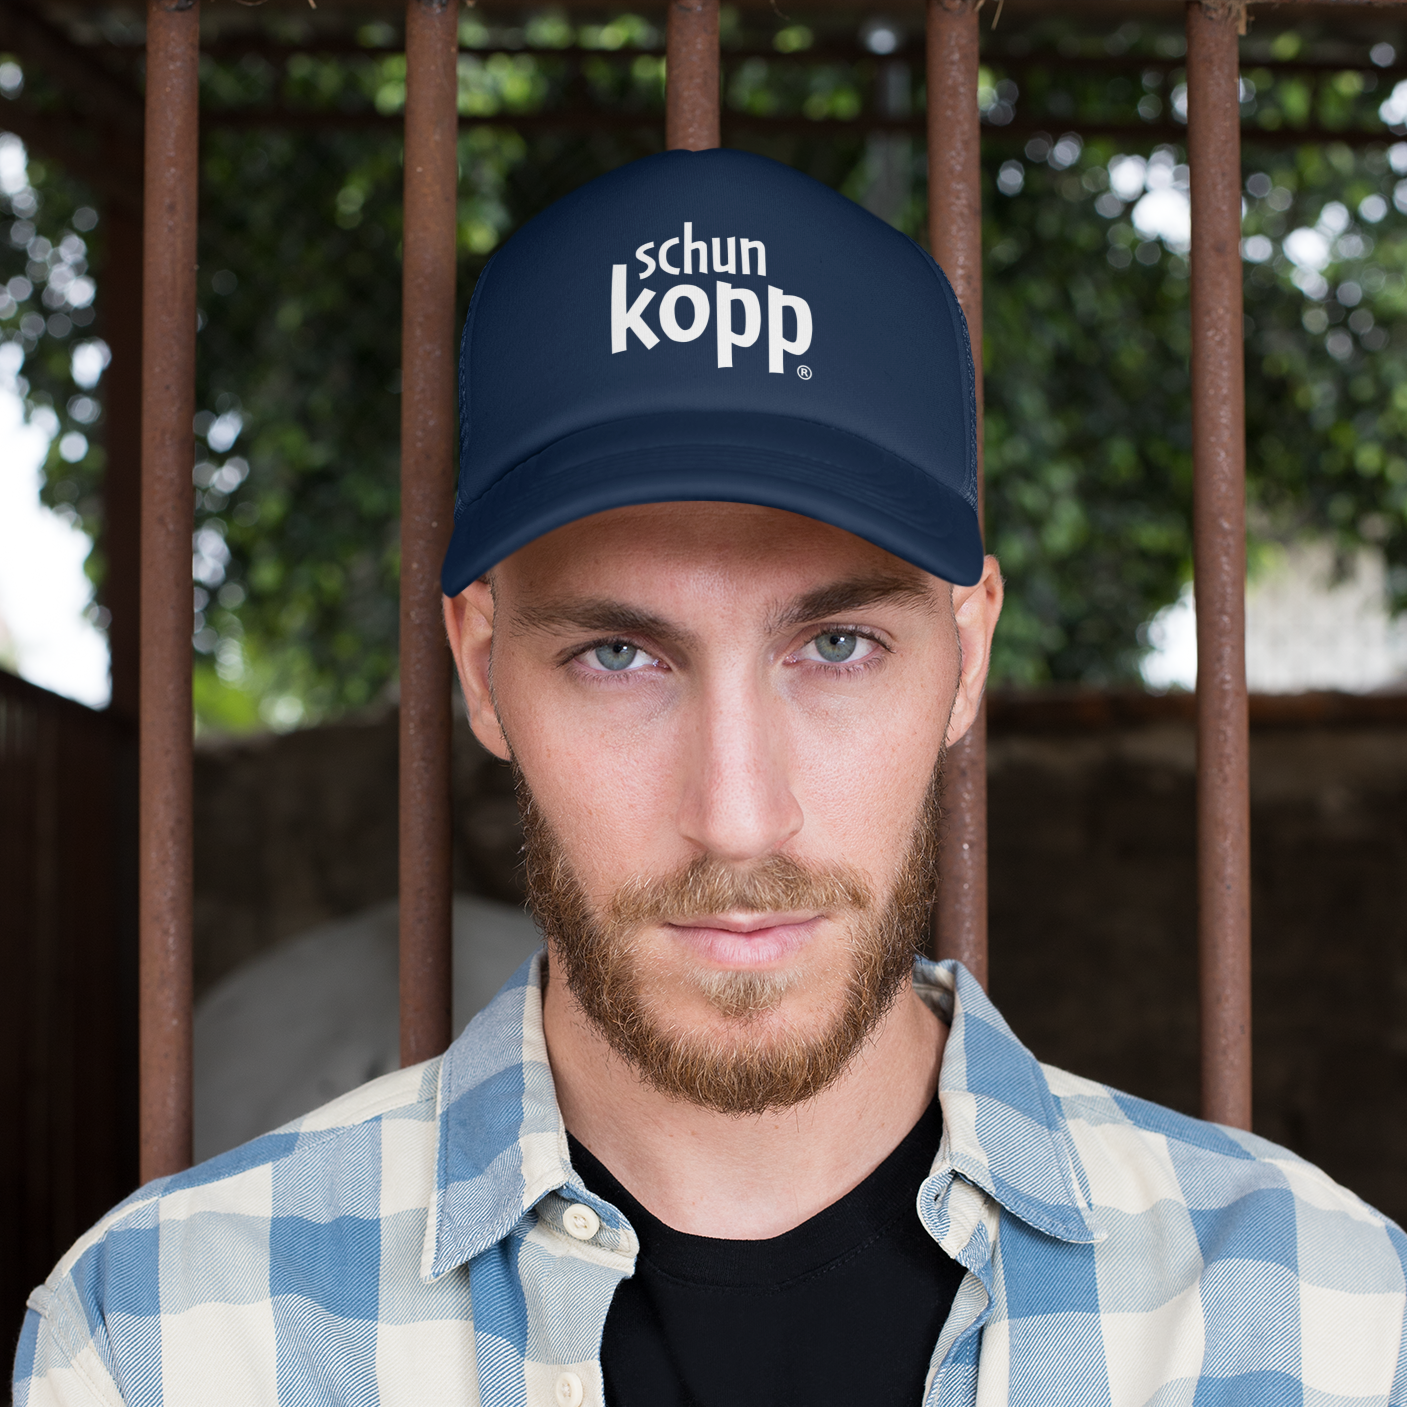 Schun Kopp - Trucker Cap bestickt - Trucker Cap